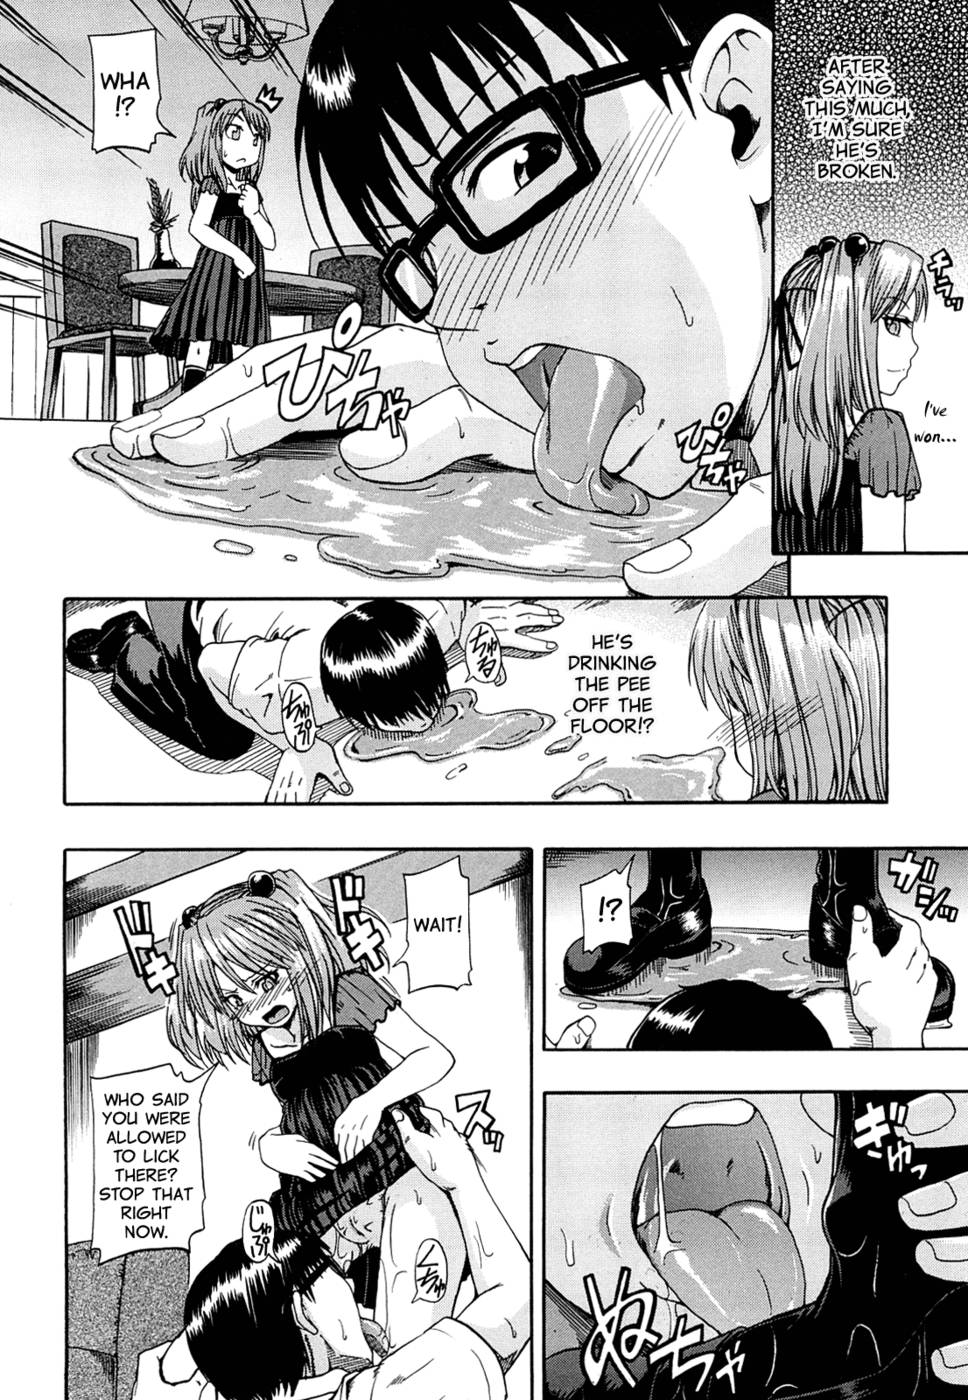 A must read hilarious hentai manga peeing hentai.